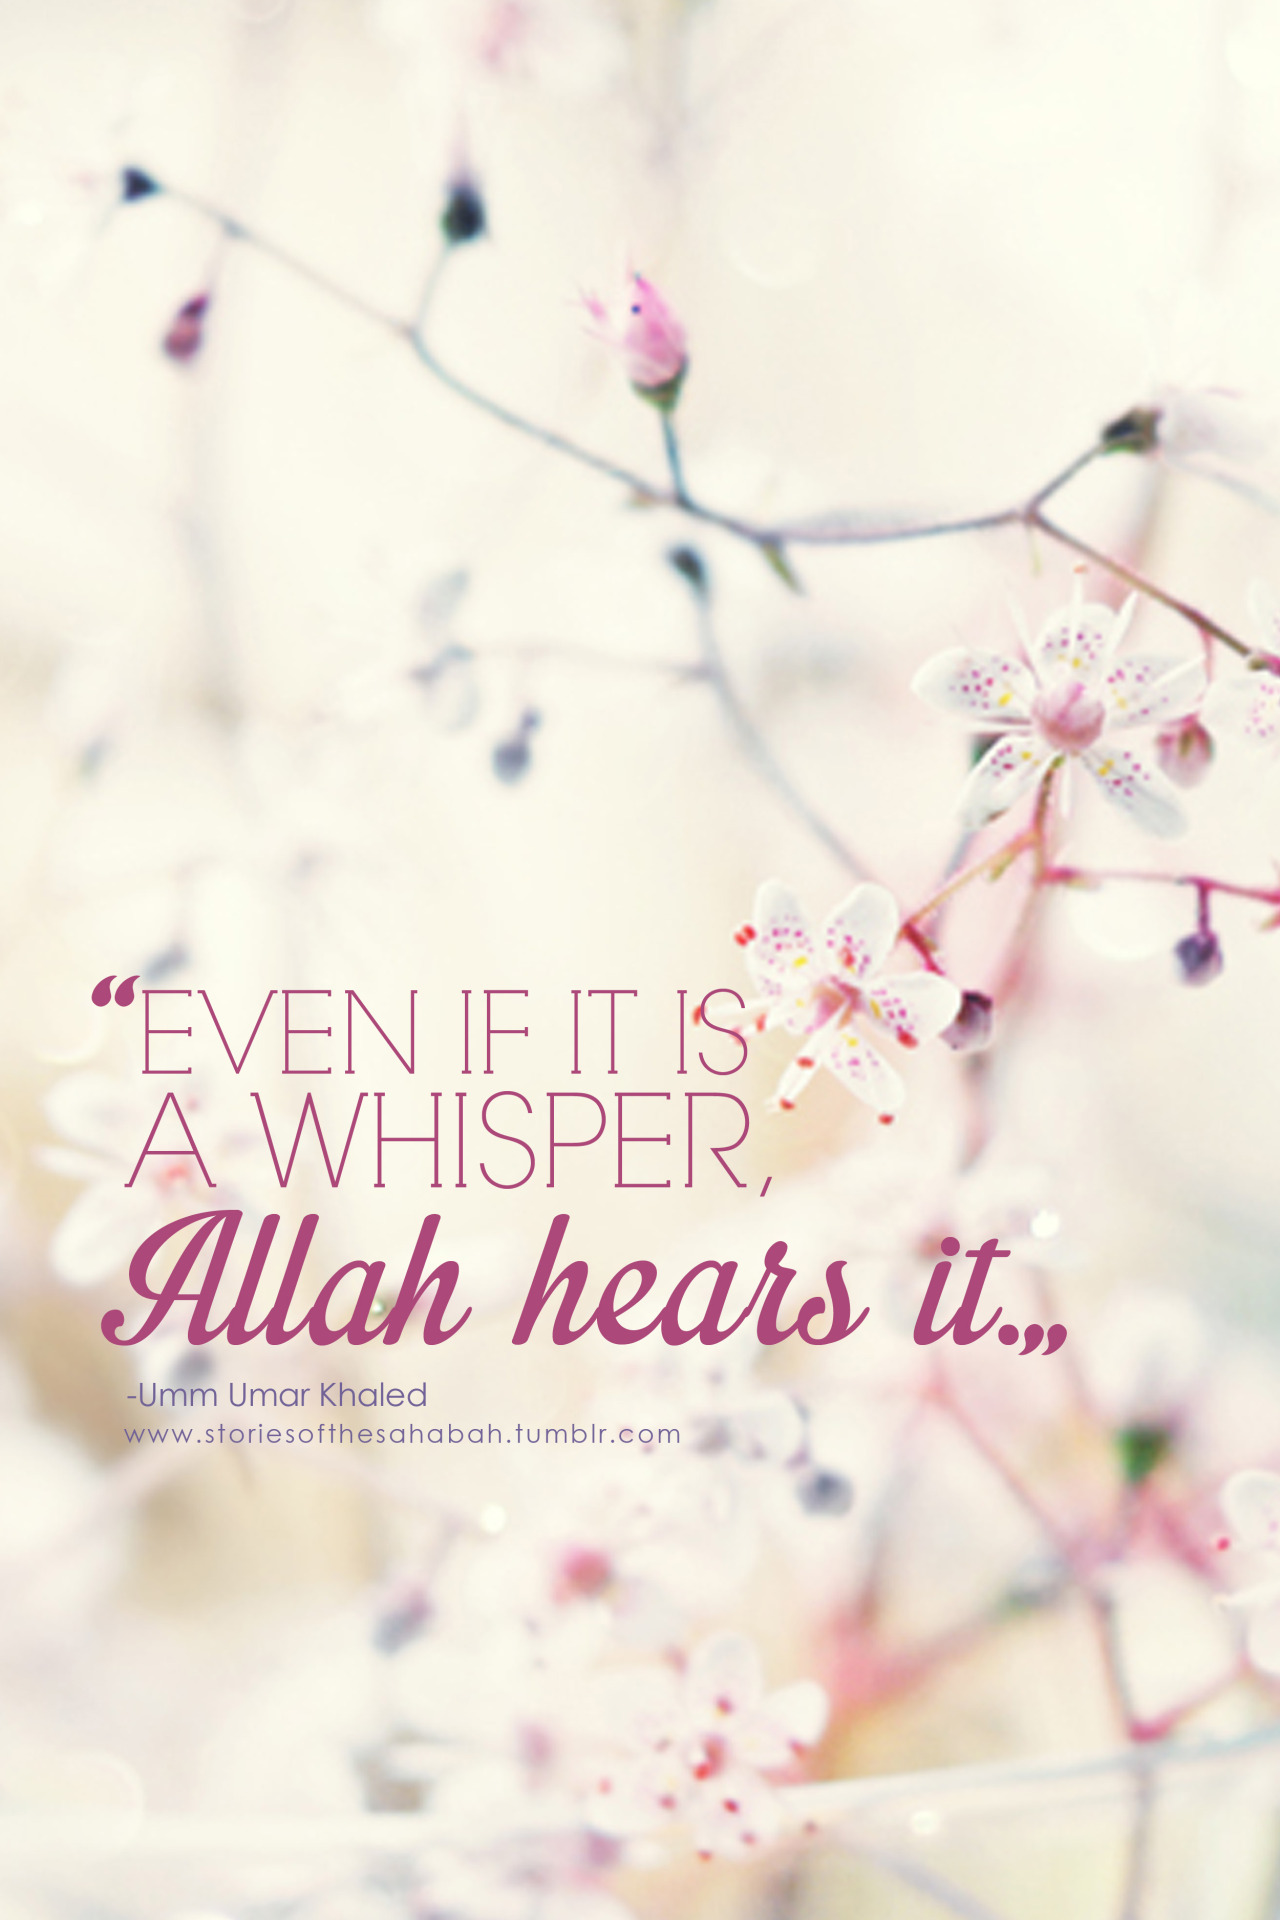 Even if it is a whisper Allah hears it